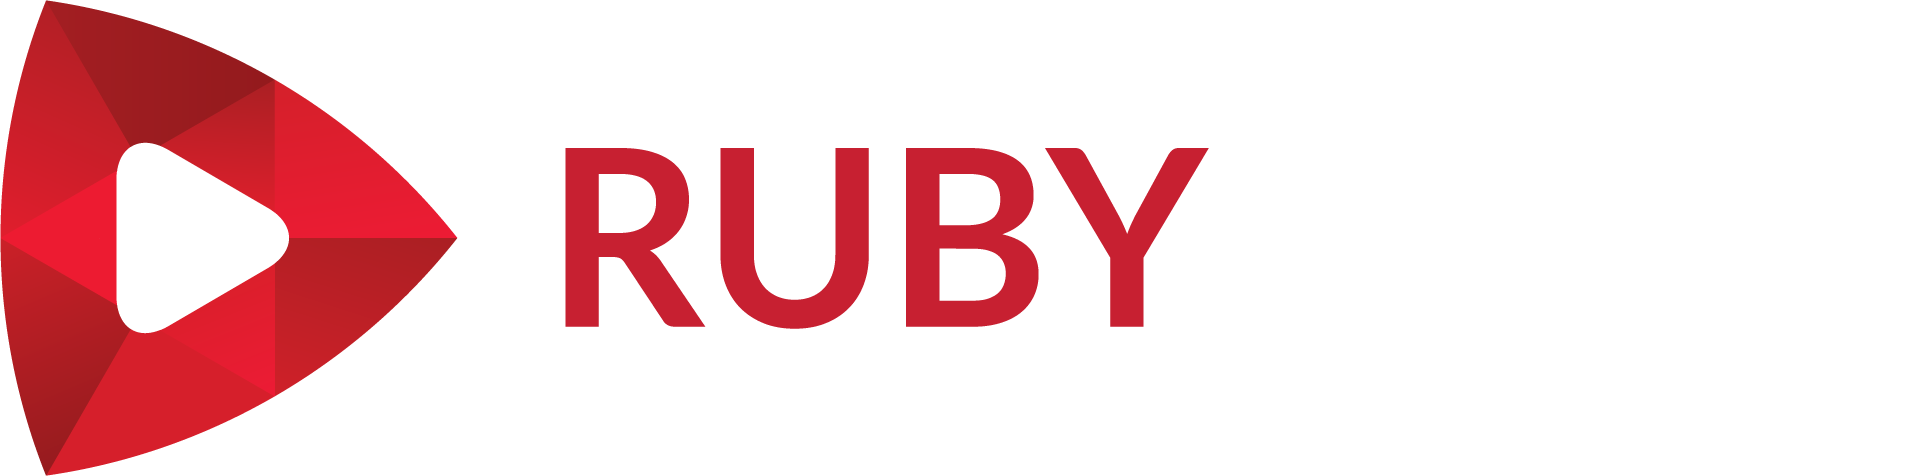 Immagine in evidenza del fornitore di software Ruby Play